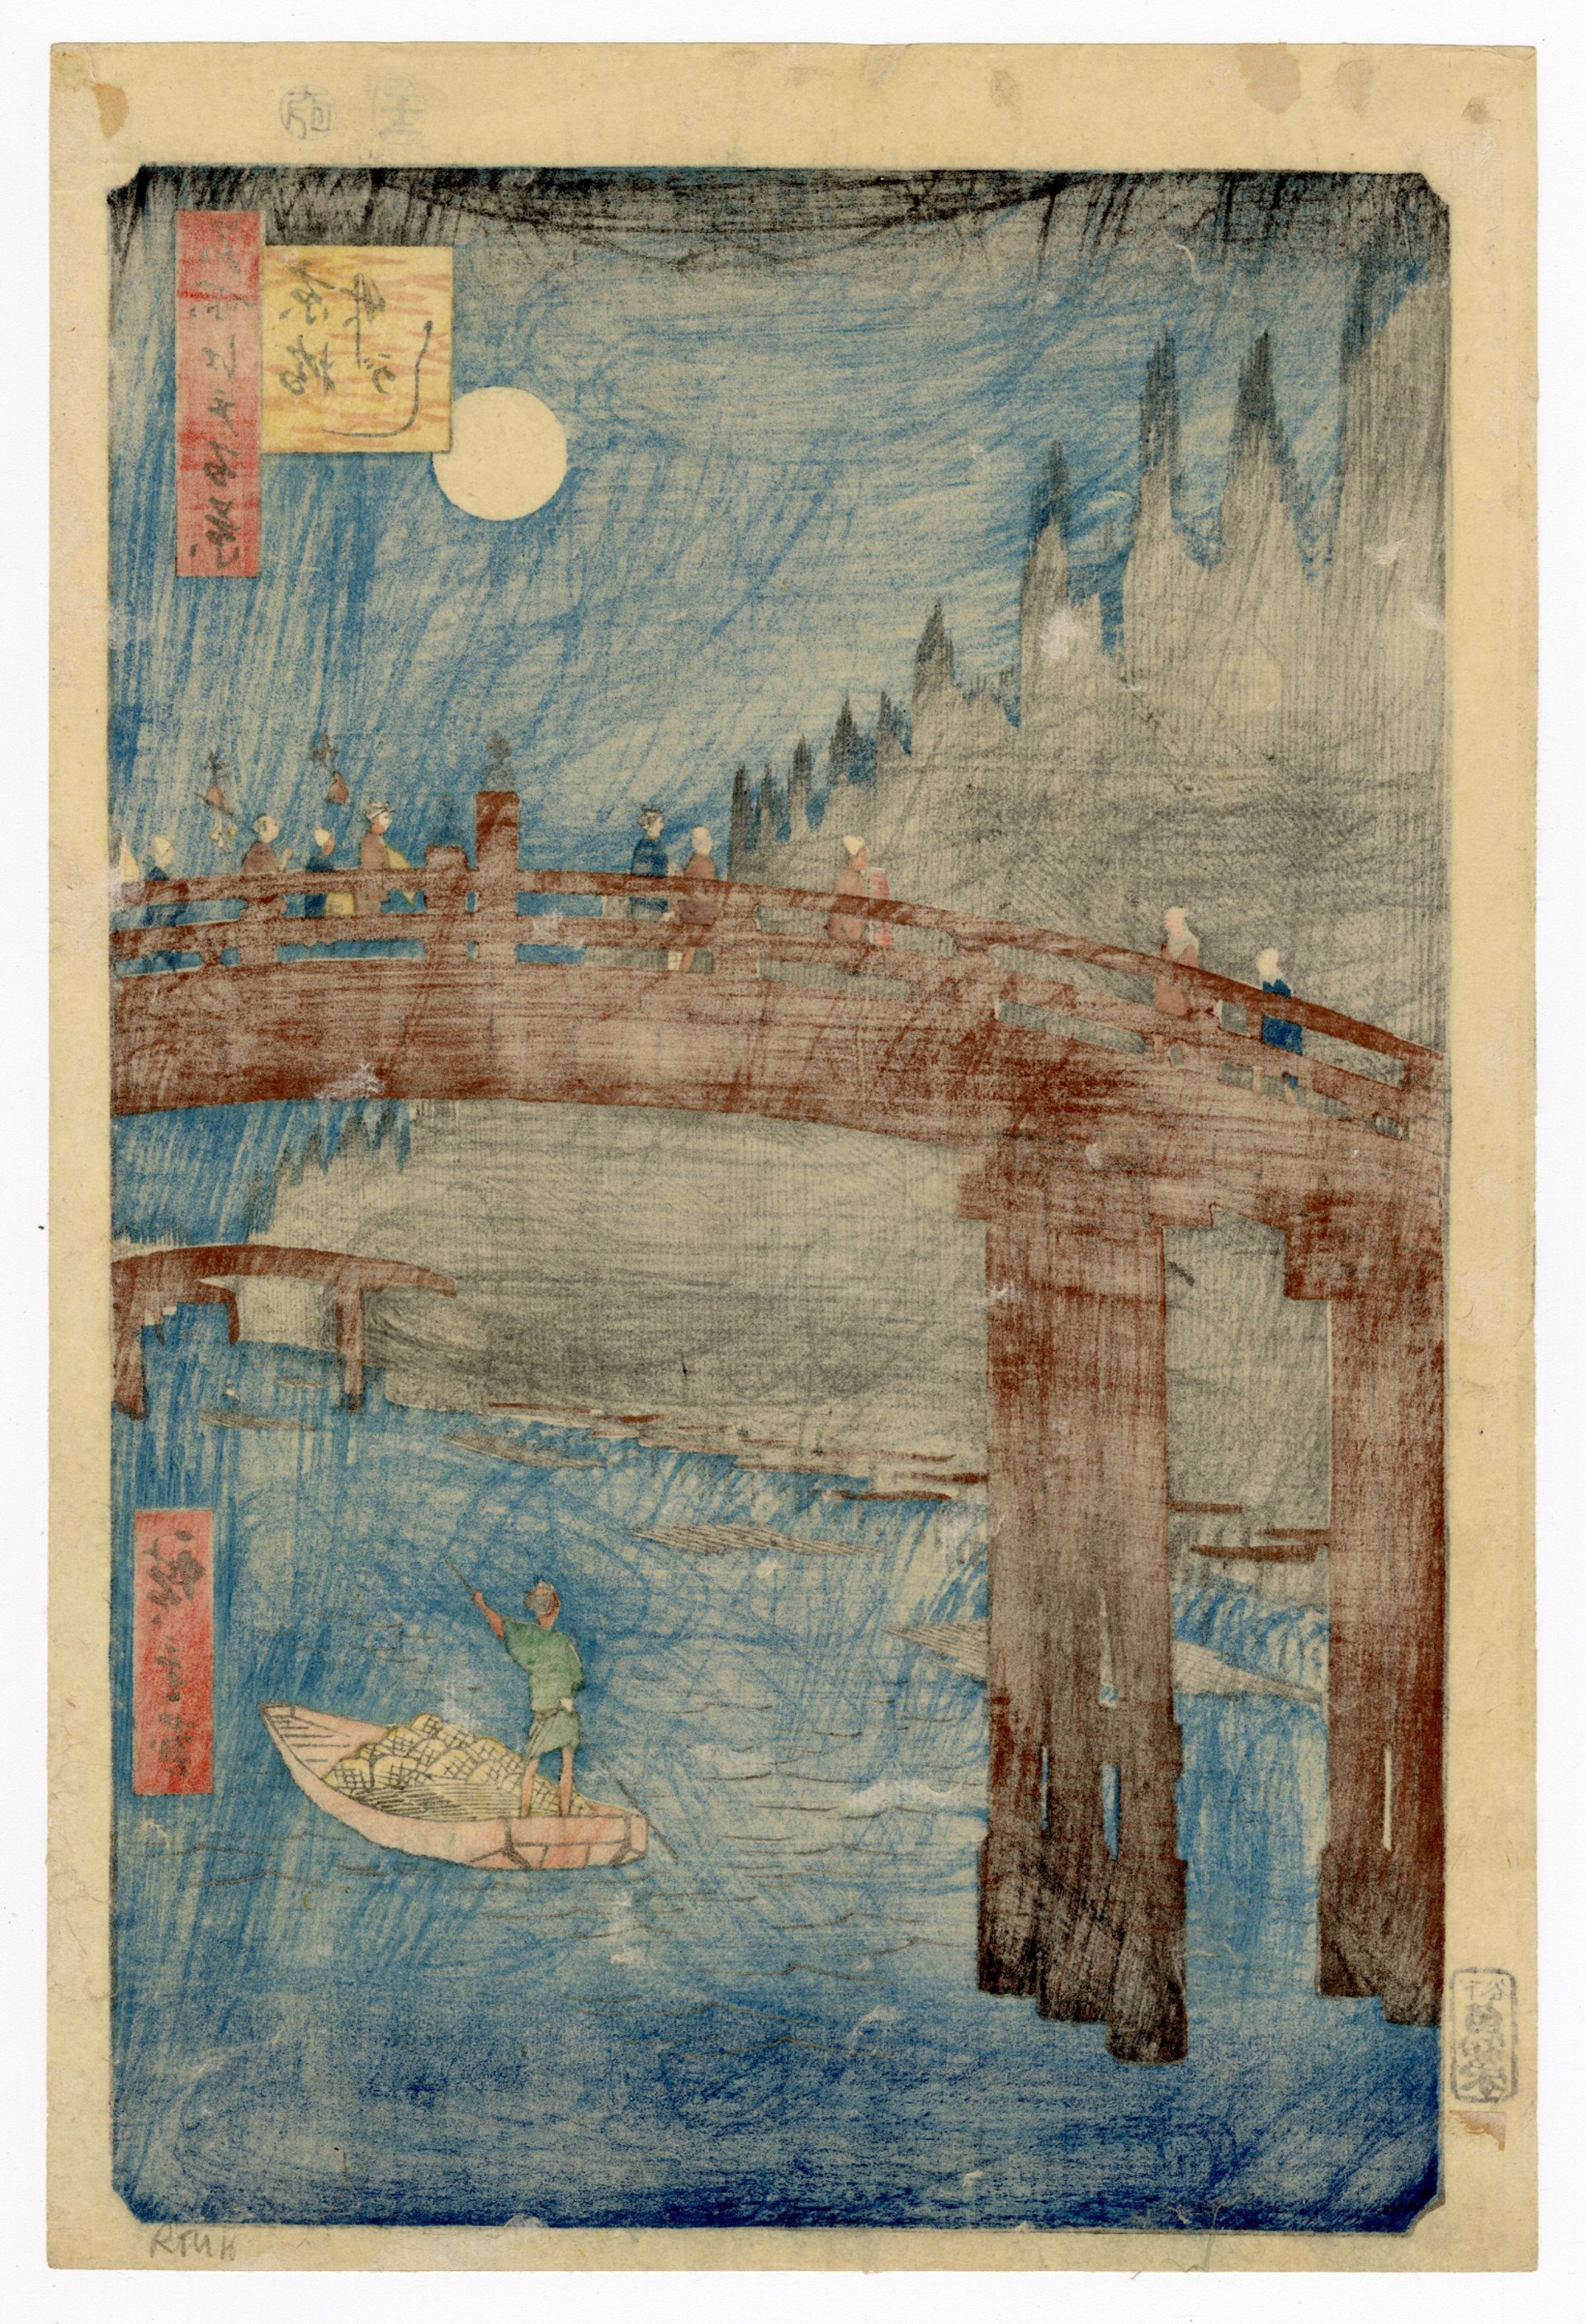 Bamboo Wharf at Kiyobashi by Hiroshige